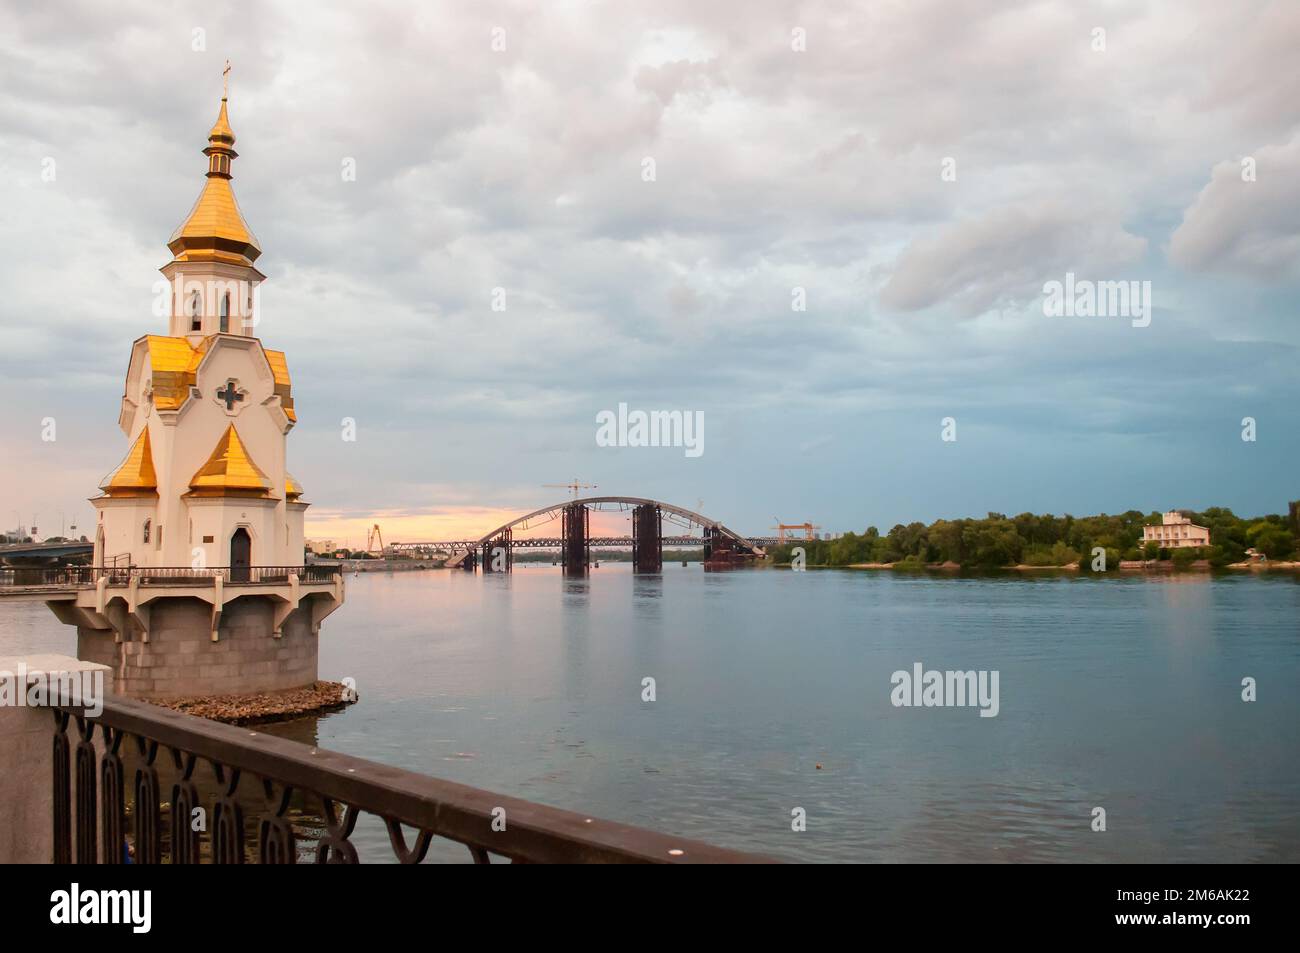 Kiev, Ucraina. Luglio 19. 2014. Vista del Dnieper con una chiesa ortodossa in acqua, un ponte in costruzione sul fiume. Tempo nuvoloso w Foto Stock